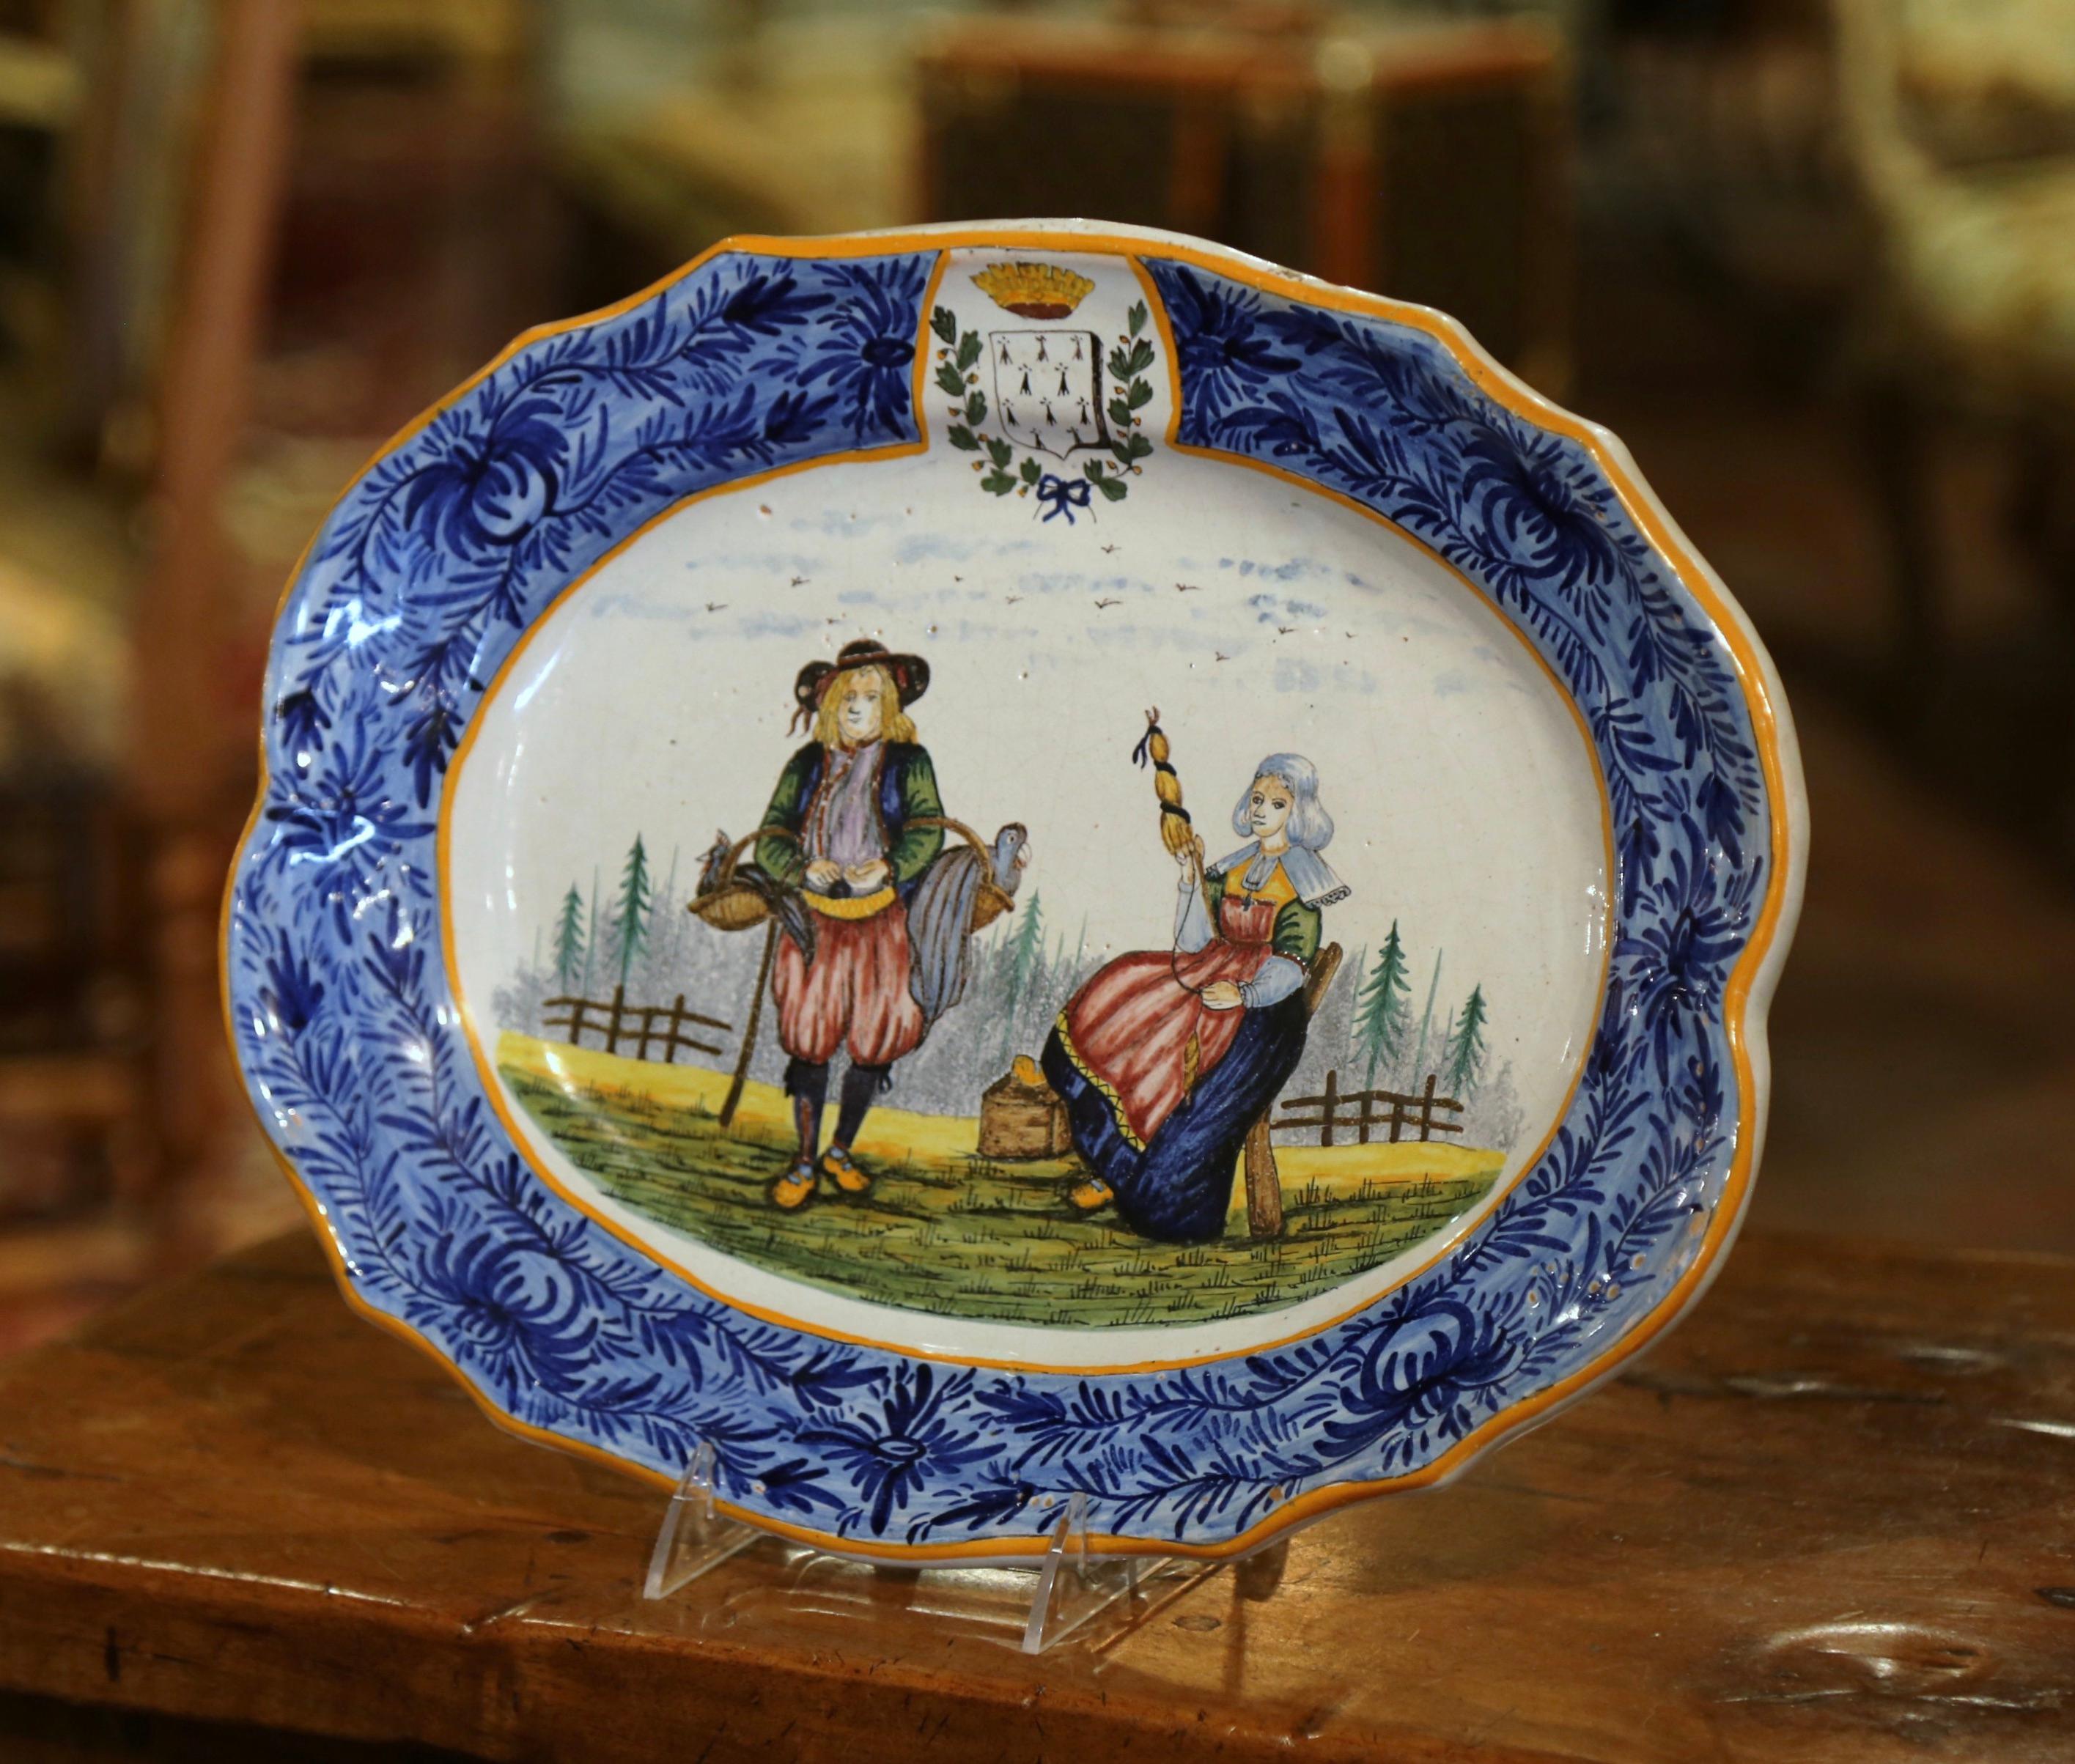 Dekorieren Sie eine Wand oder ein Regal mit dieser farbenfrohen antiken Platte. Der große handbemalte Keramikteller wurde um 1895 in der Bretagne, Frankreich, hergestellt und zeigt ein bretonisches Paar in traditioneller Tracht. Der ovale